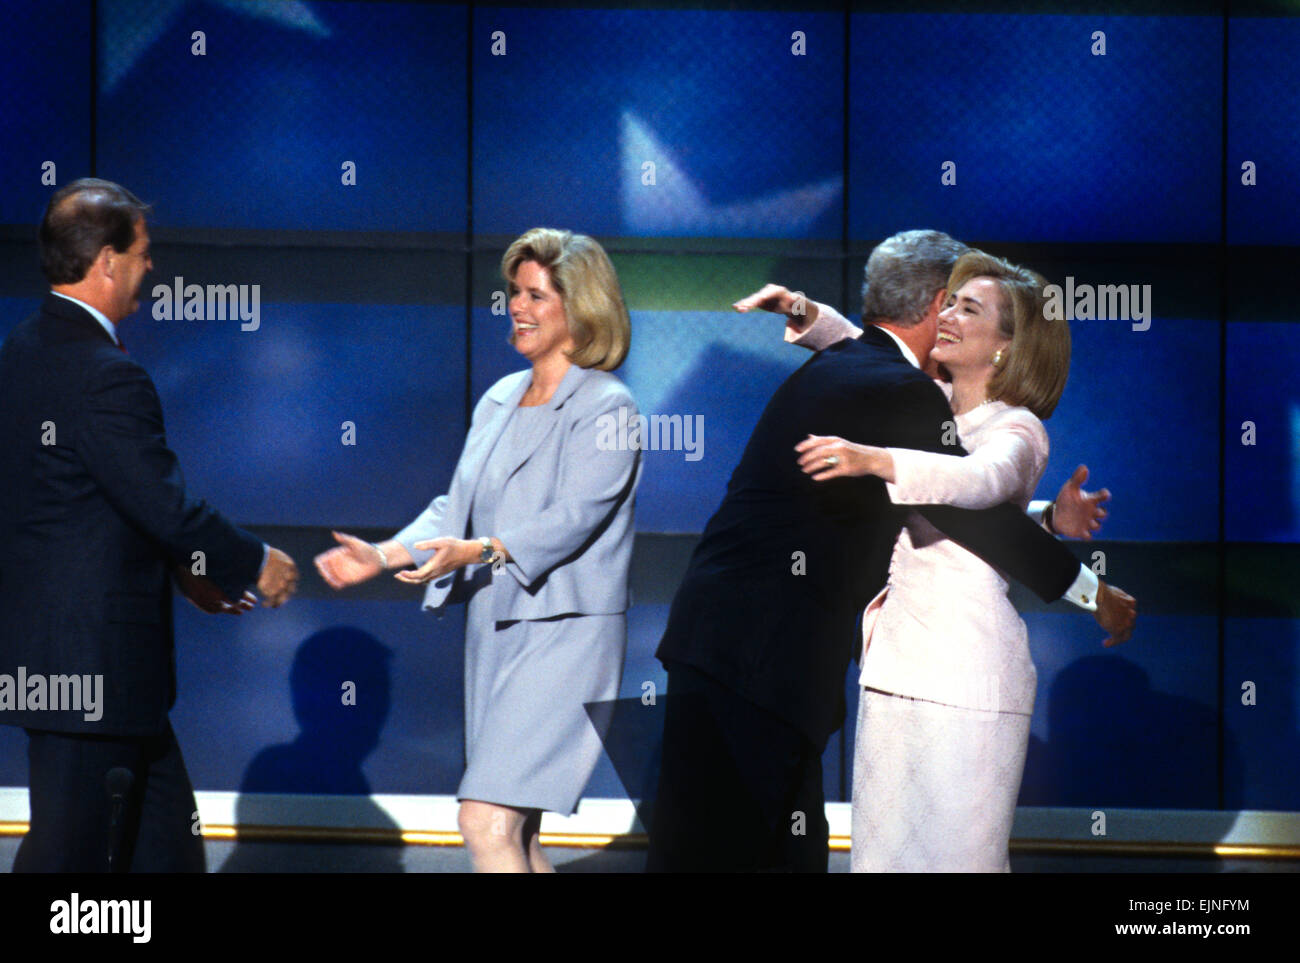 US-Präsident Bill Clinton umarmt erste Dame Hillary Rodham Clinton und Vizepräsident Al Gore umarmt Frau Tipper, nachdem sie die Nominierung für die demokratische Partei bei der Democratic National Convention 1996 29. August 1996 in Chicago, IL akzeptiert. Stockfoto